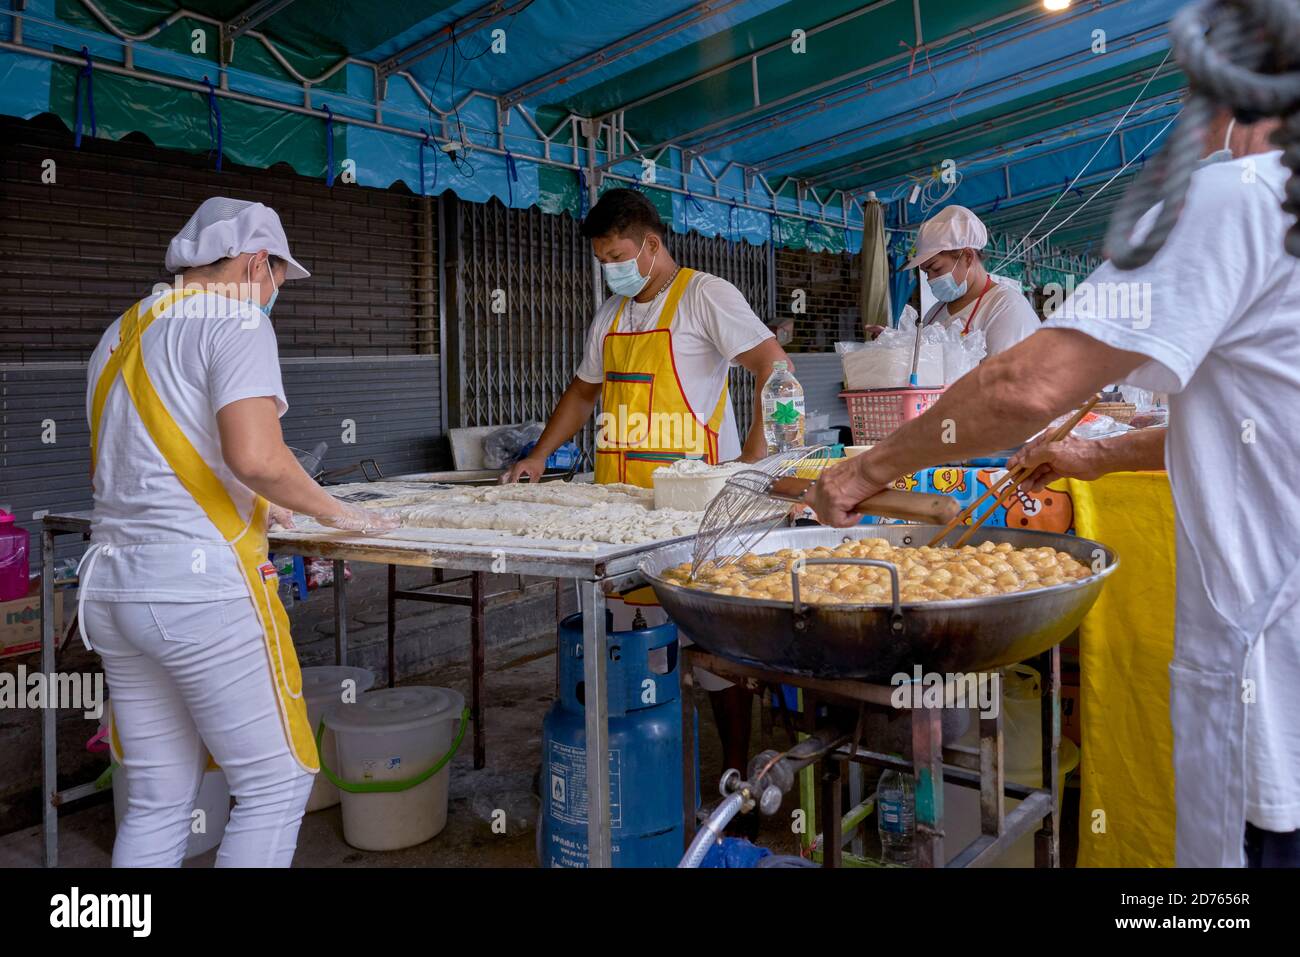 Panettiere preparazione di palle di pane zuccherate fritte popolari come spuntino Un complemento per il caffe' alimentare in un mercato alimentare di strada in Thailandia Foto Stock